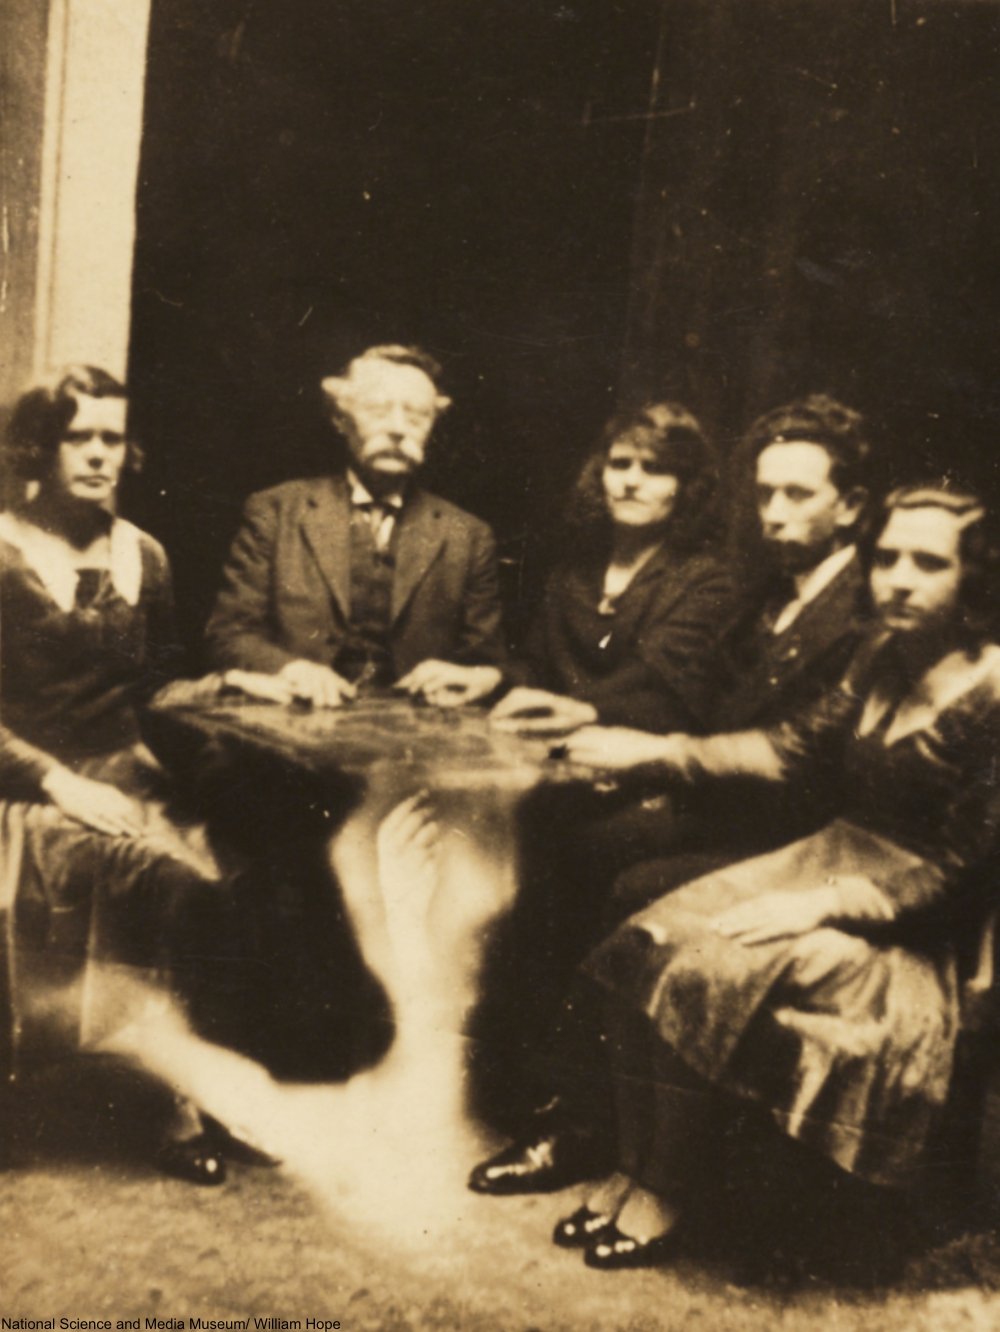 Foto de reunião espírita no meio do século XIX. Pessoas sentadas ao redor de uma mesa, com as mãos em cima da mesa.